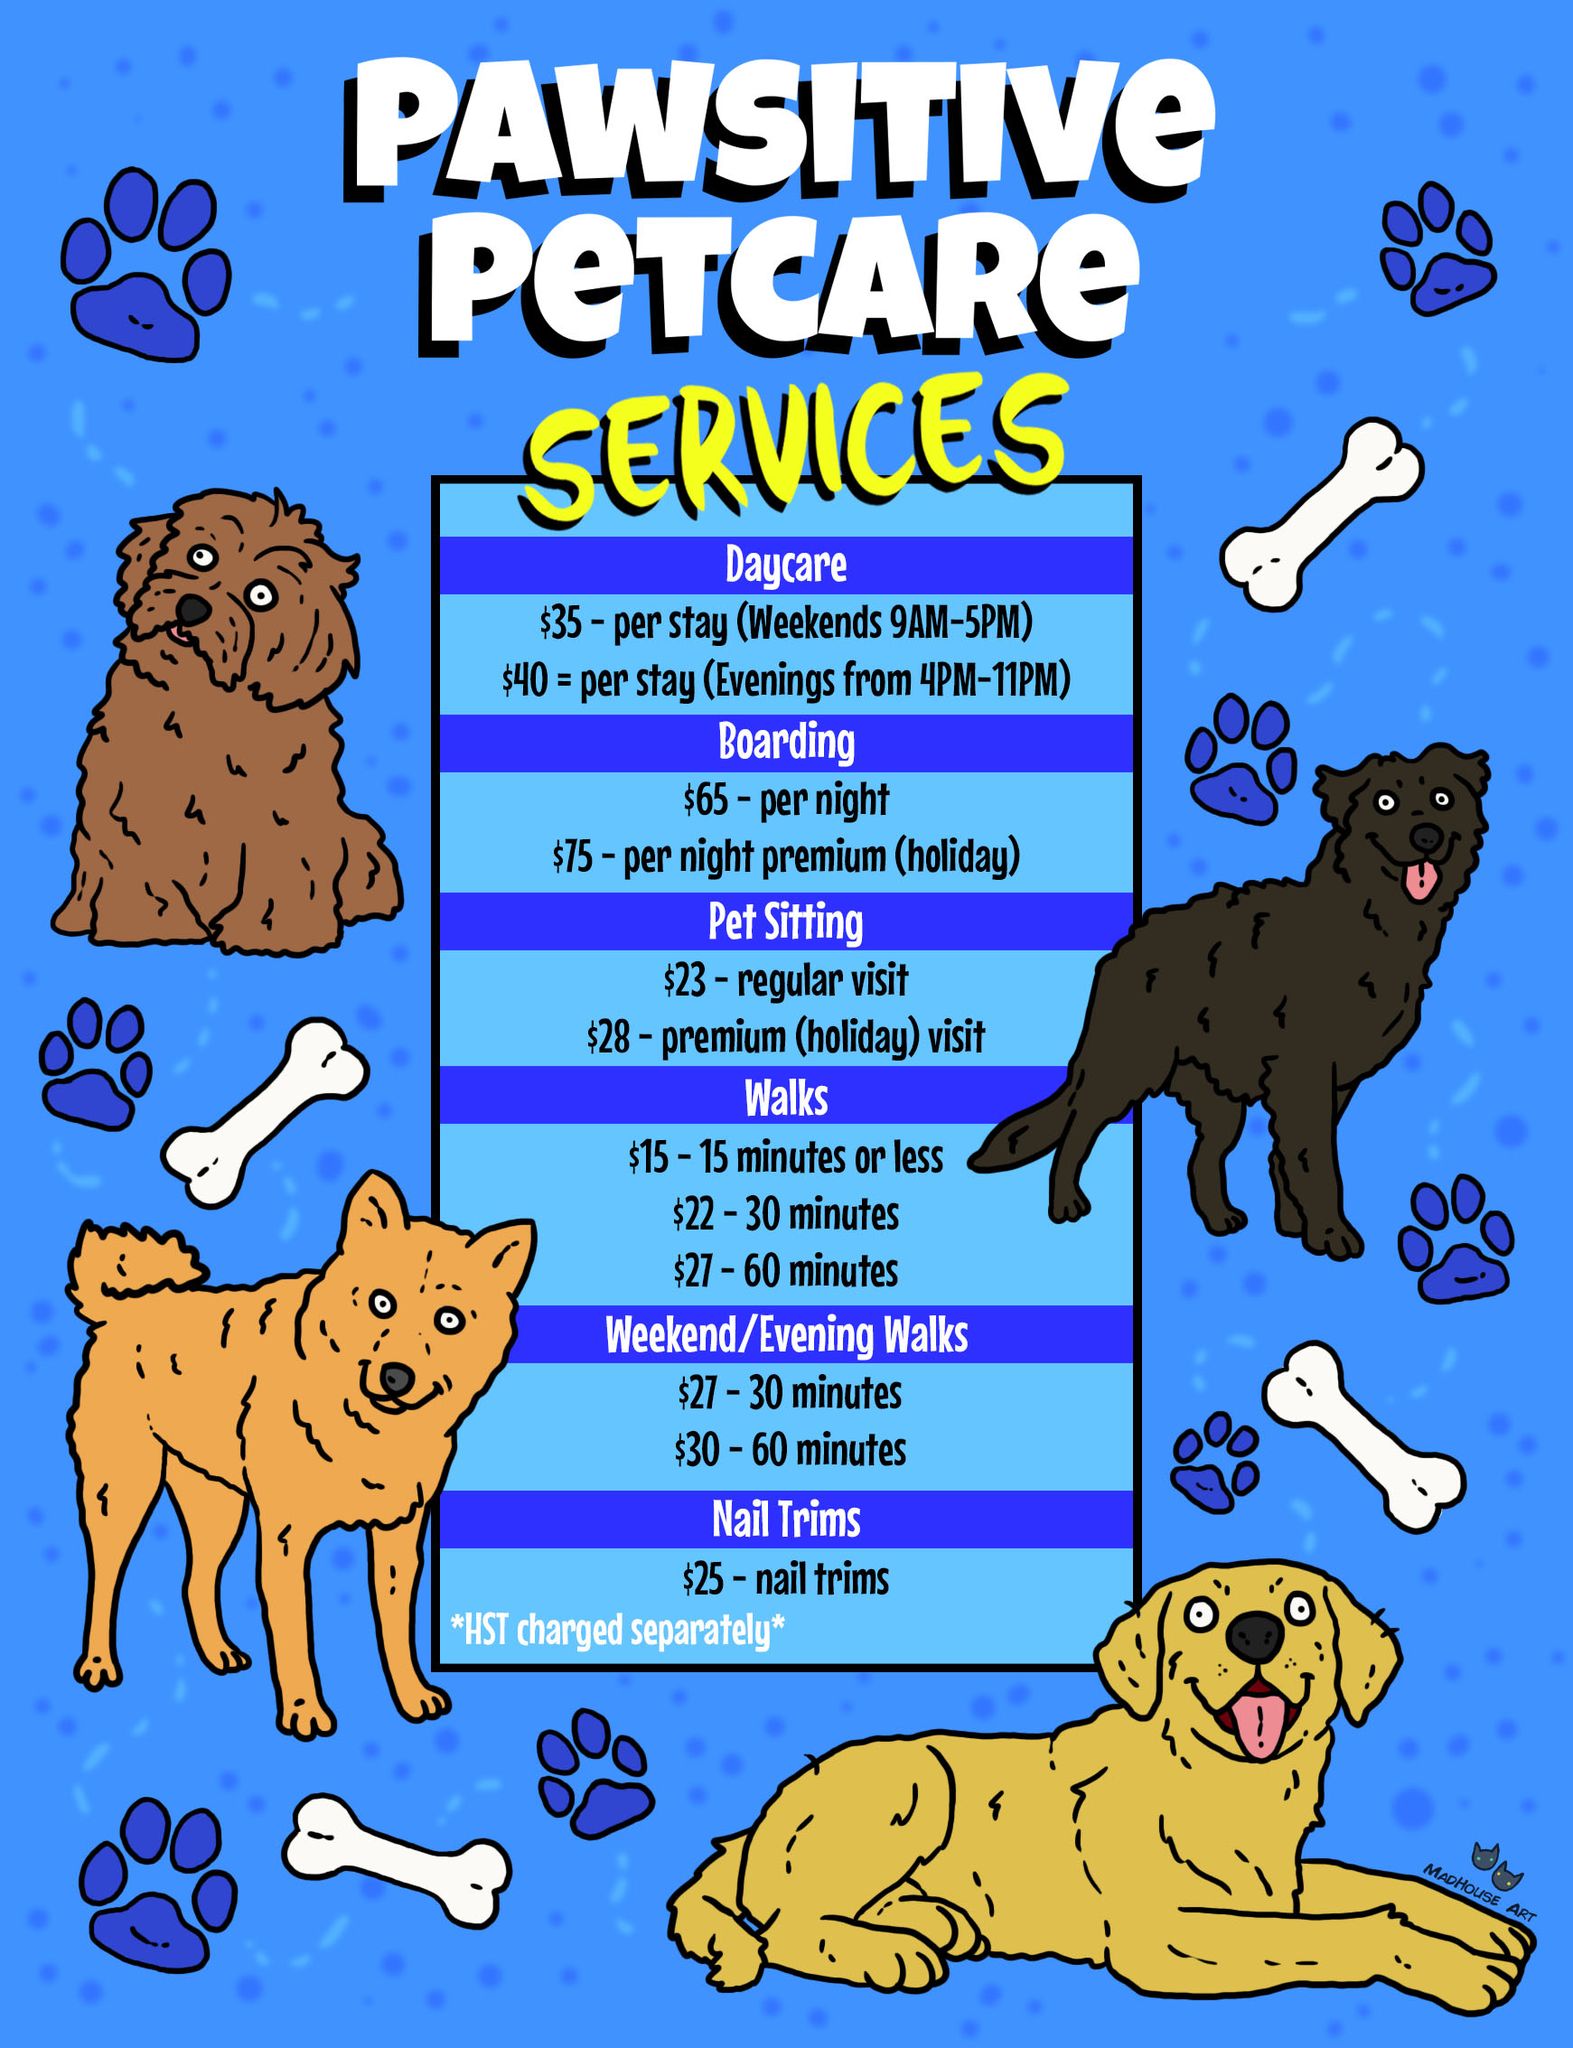 Pawsitive Petcare Service Menu — contact (647) 228-8230 or pawsitivepetcareto@gmail.com for more information